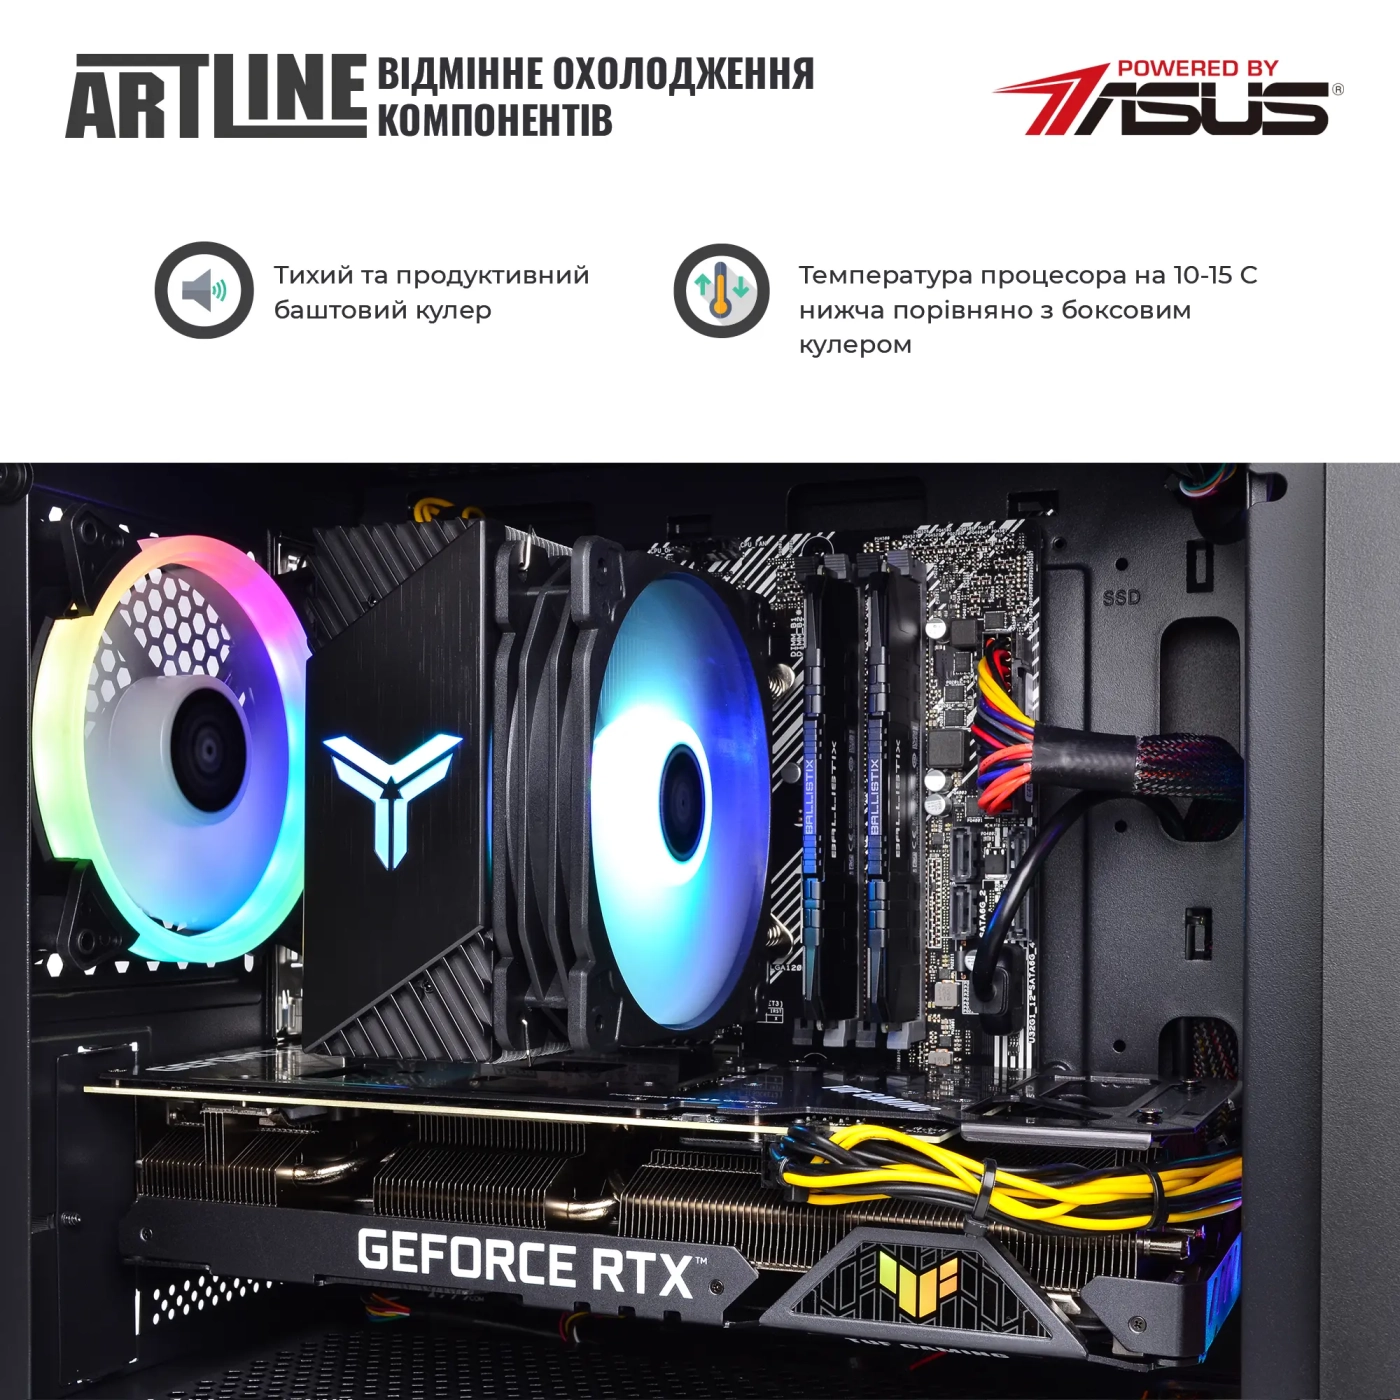 Купить Компьютер ARTLINE Gaming X57v53 - фото 5